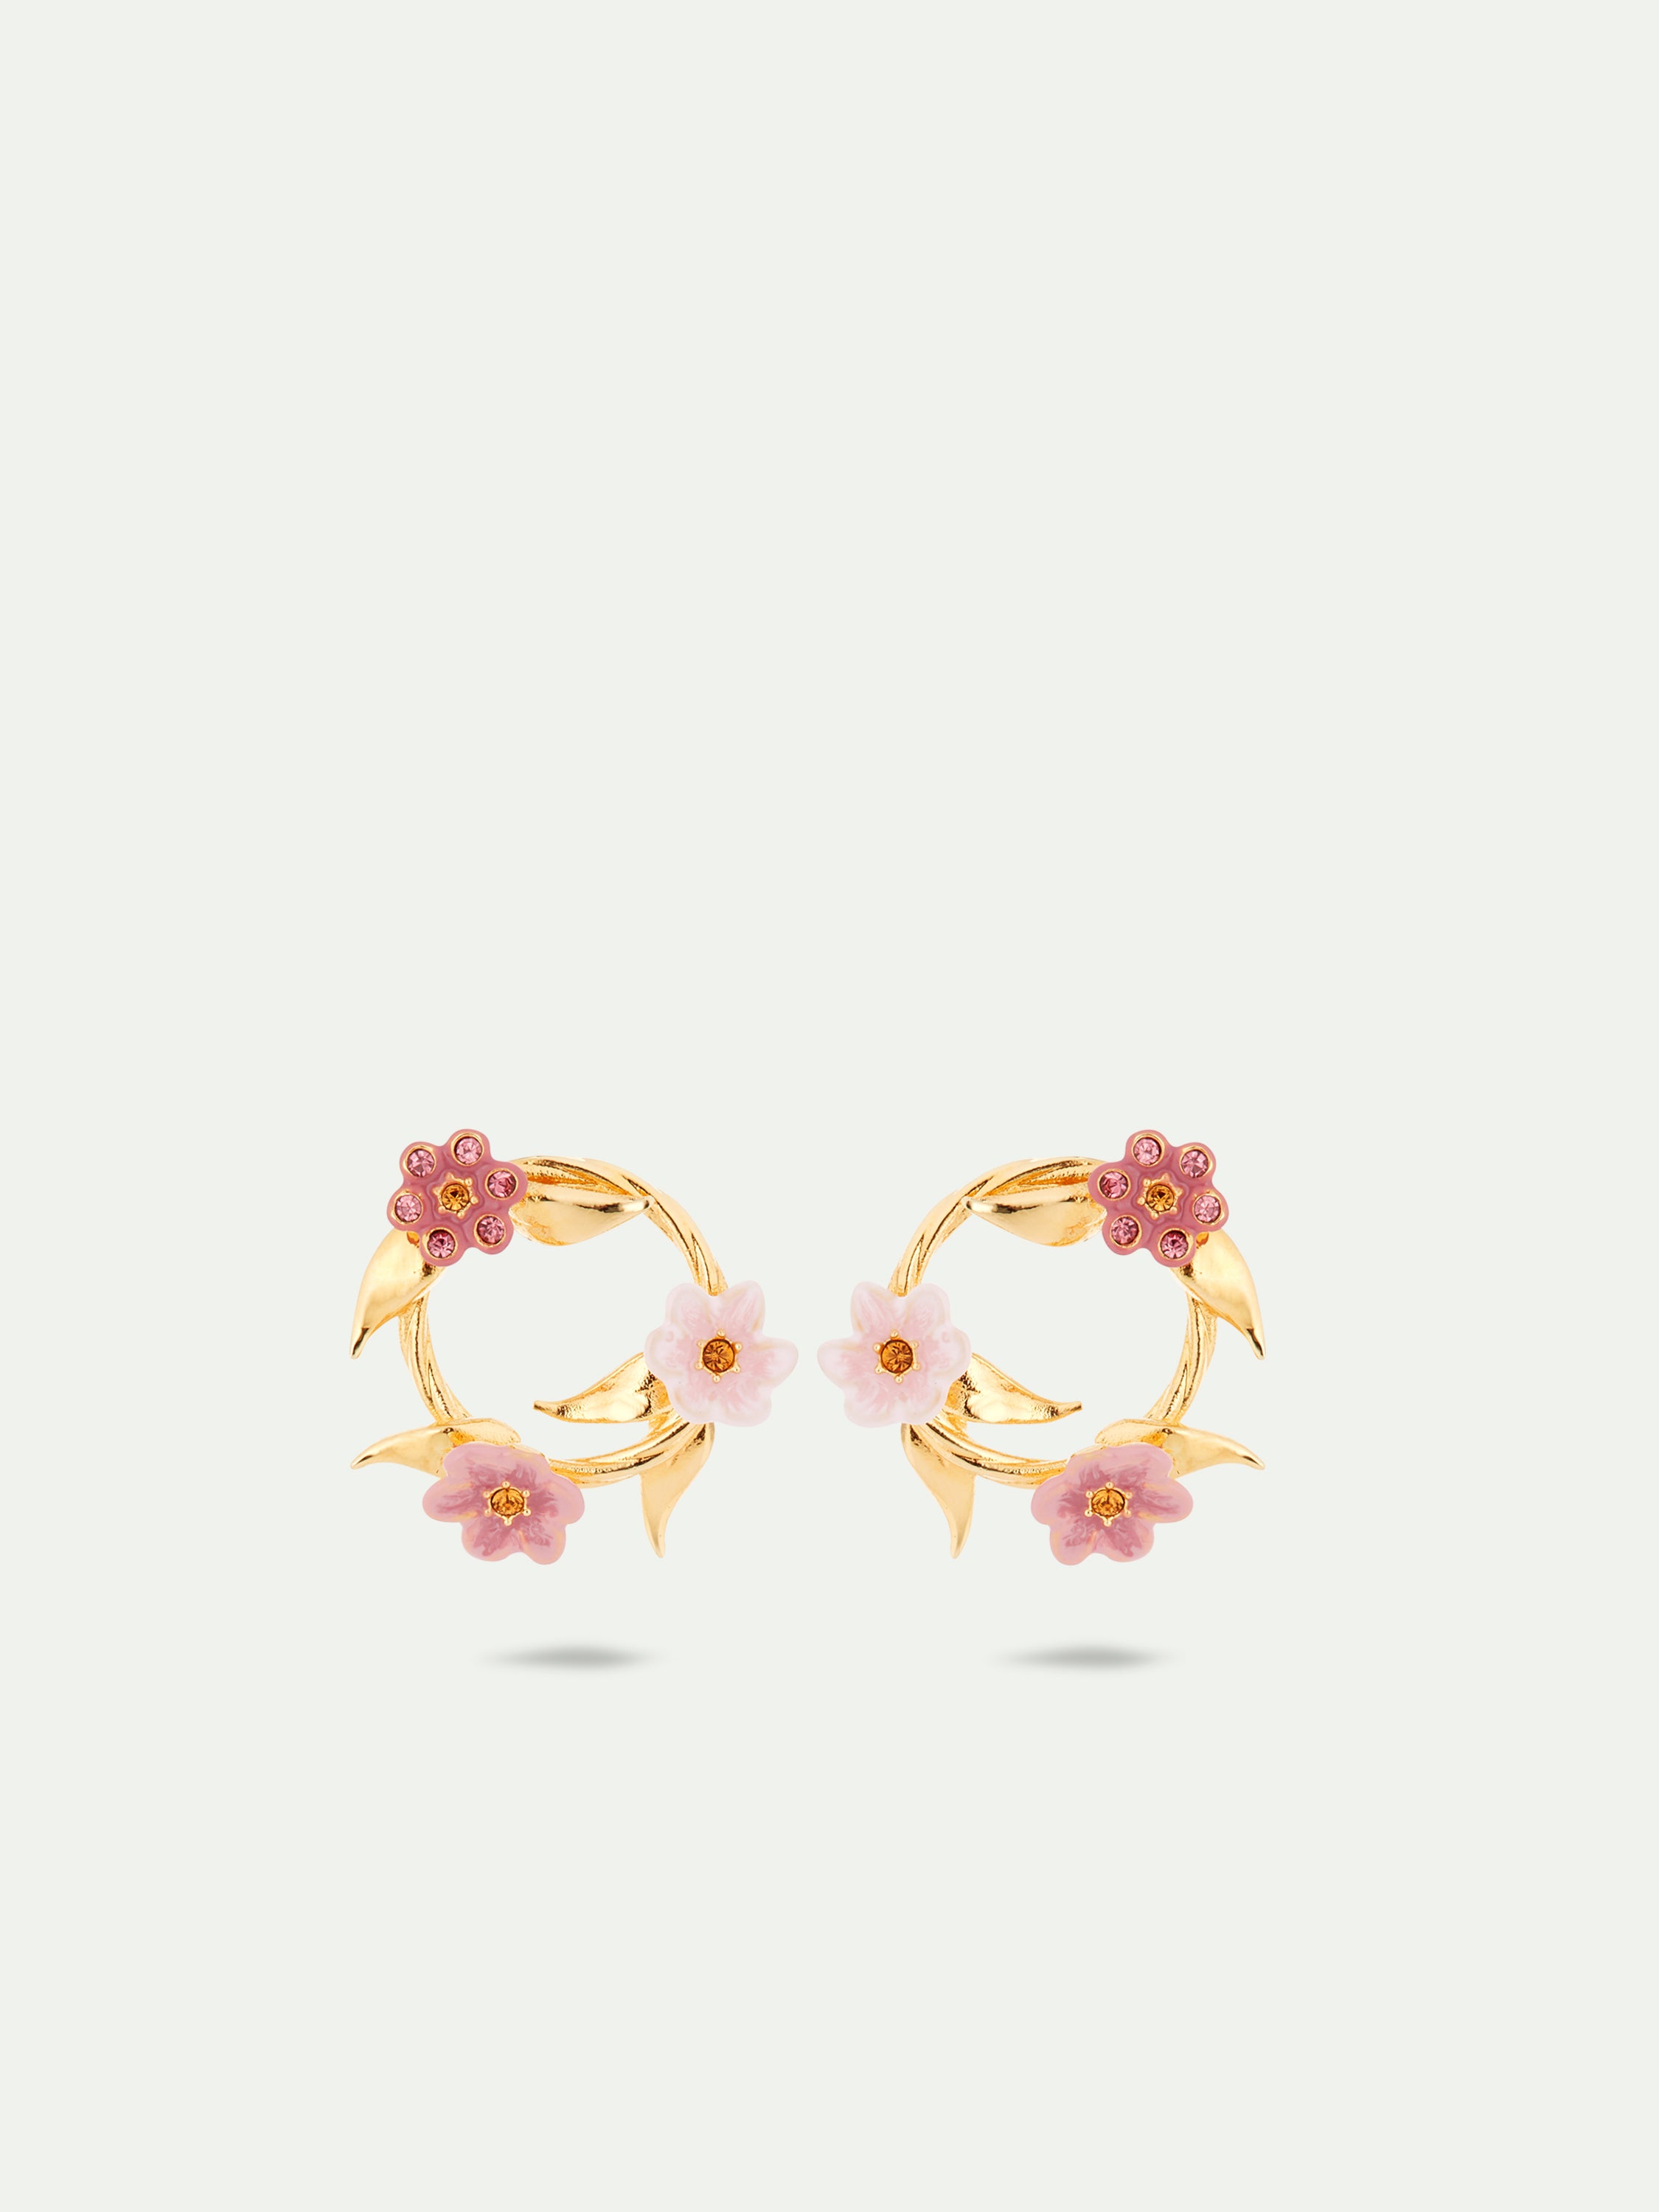 Boucles d'oreilles tiges couronne de fleurs de jasmin roses